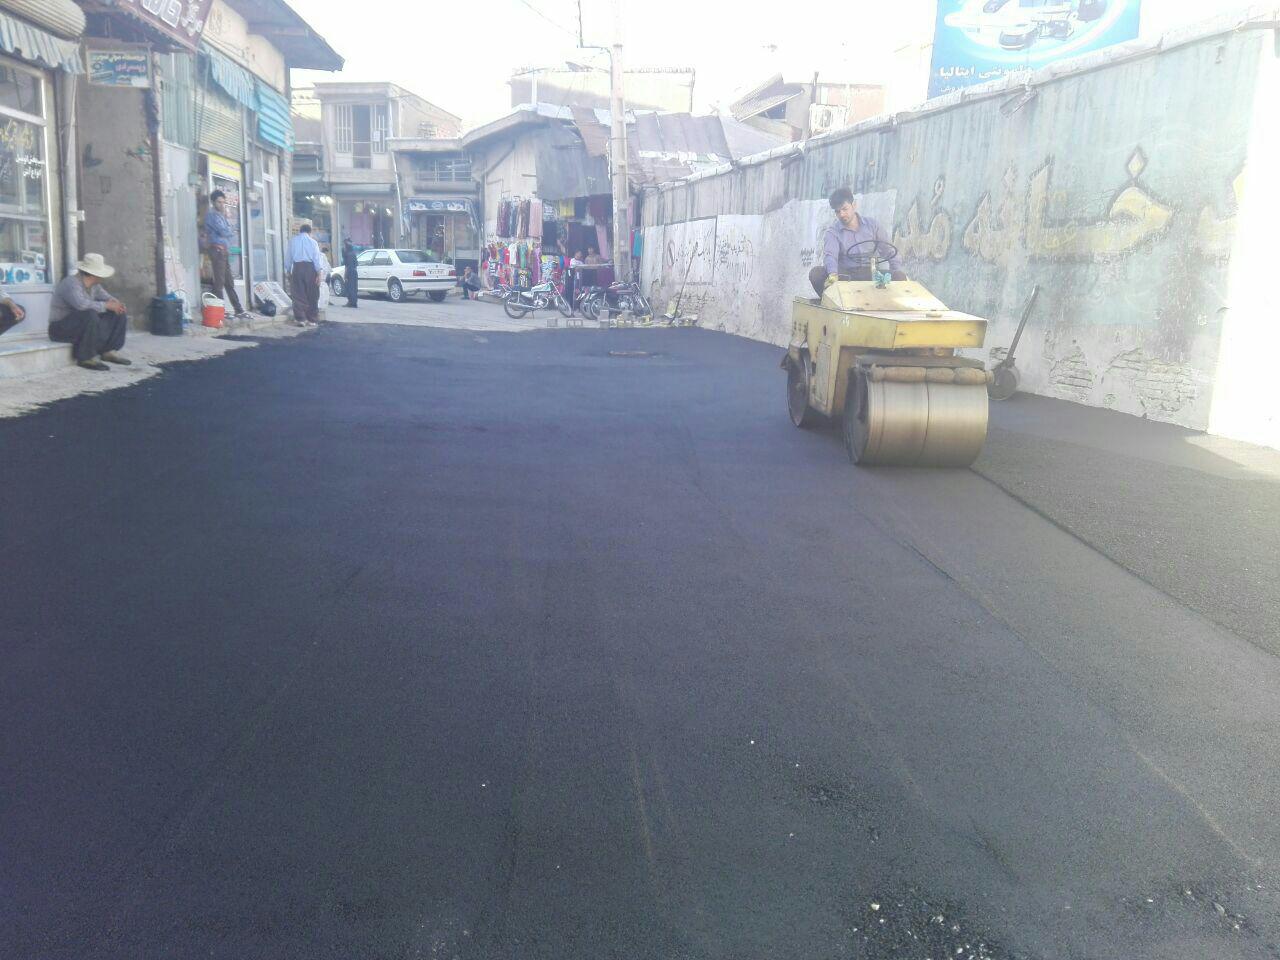 شهردار سقز: اتمام عملیات بازسازی کانال سرپوشیده خیابان فخر رازی